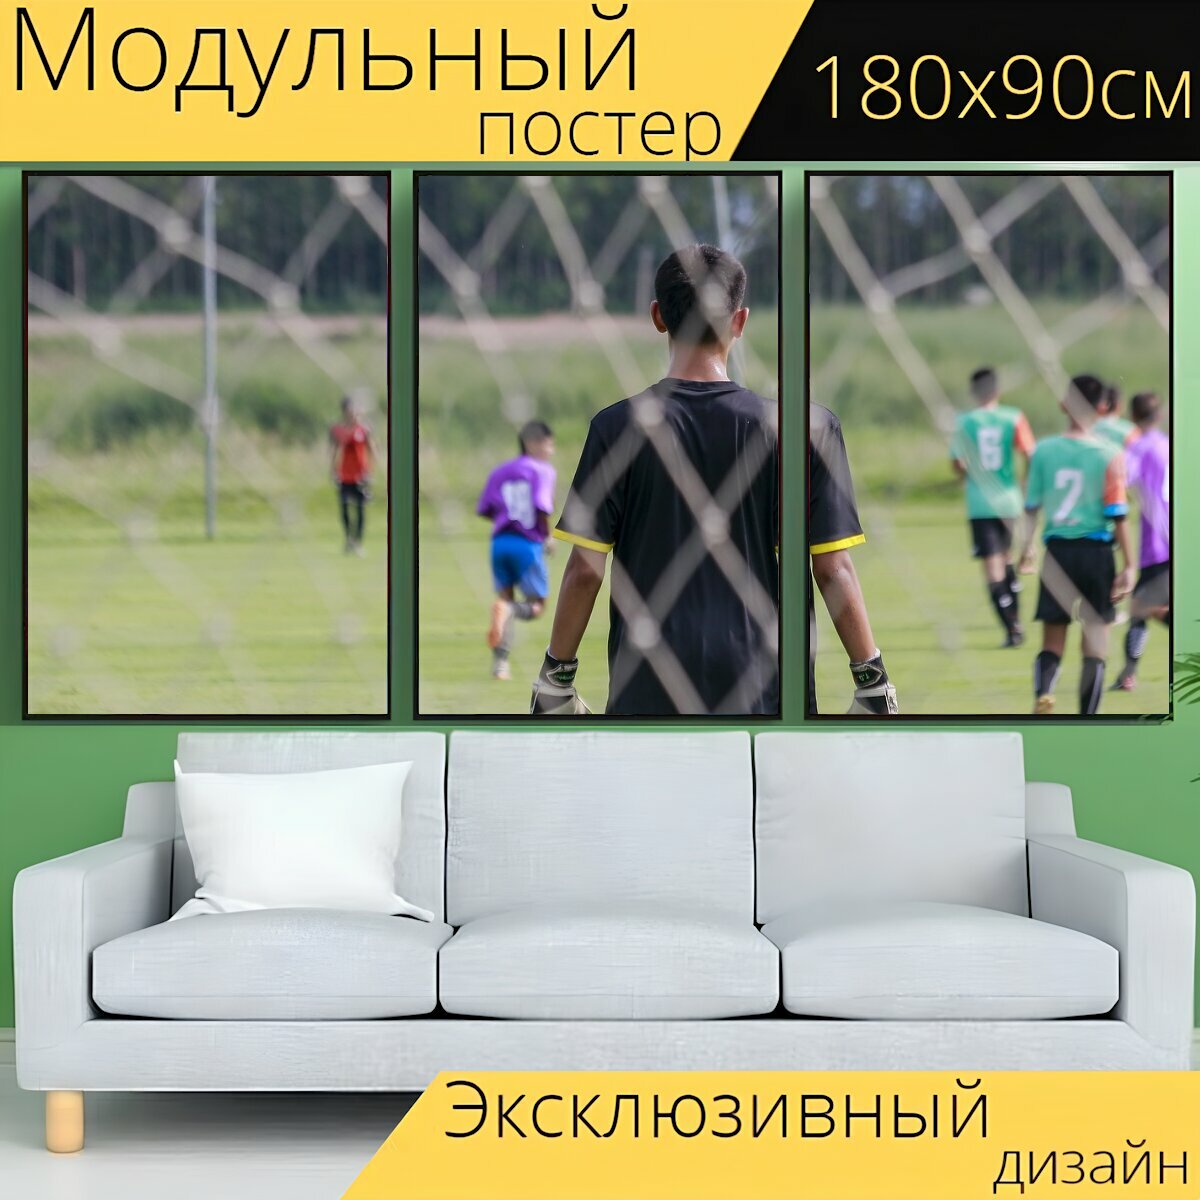 Модульный постер "Футбол, виды спорта, футбольное поле" 180 x 90 см. для интерьера